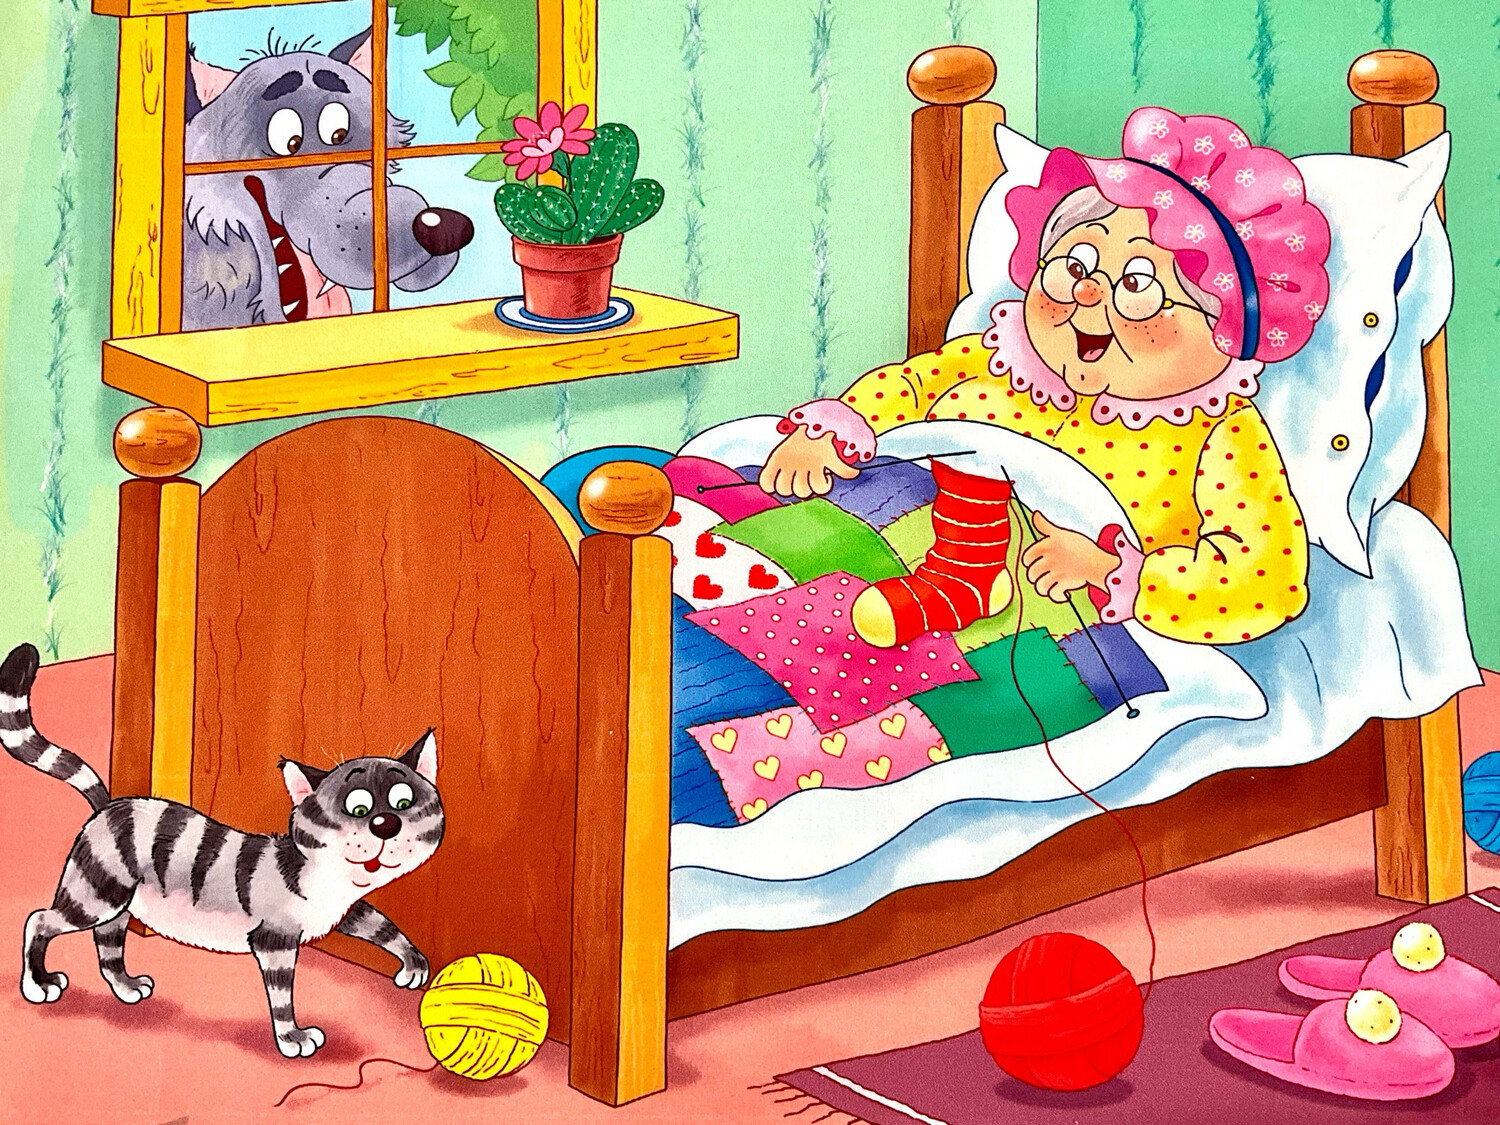 Pannello Cappuccetto Rosso - la Nonna a letto -Colorato